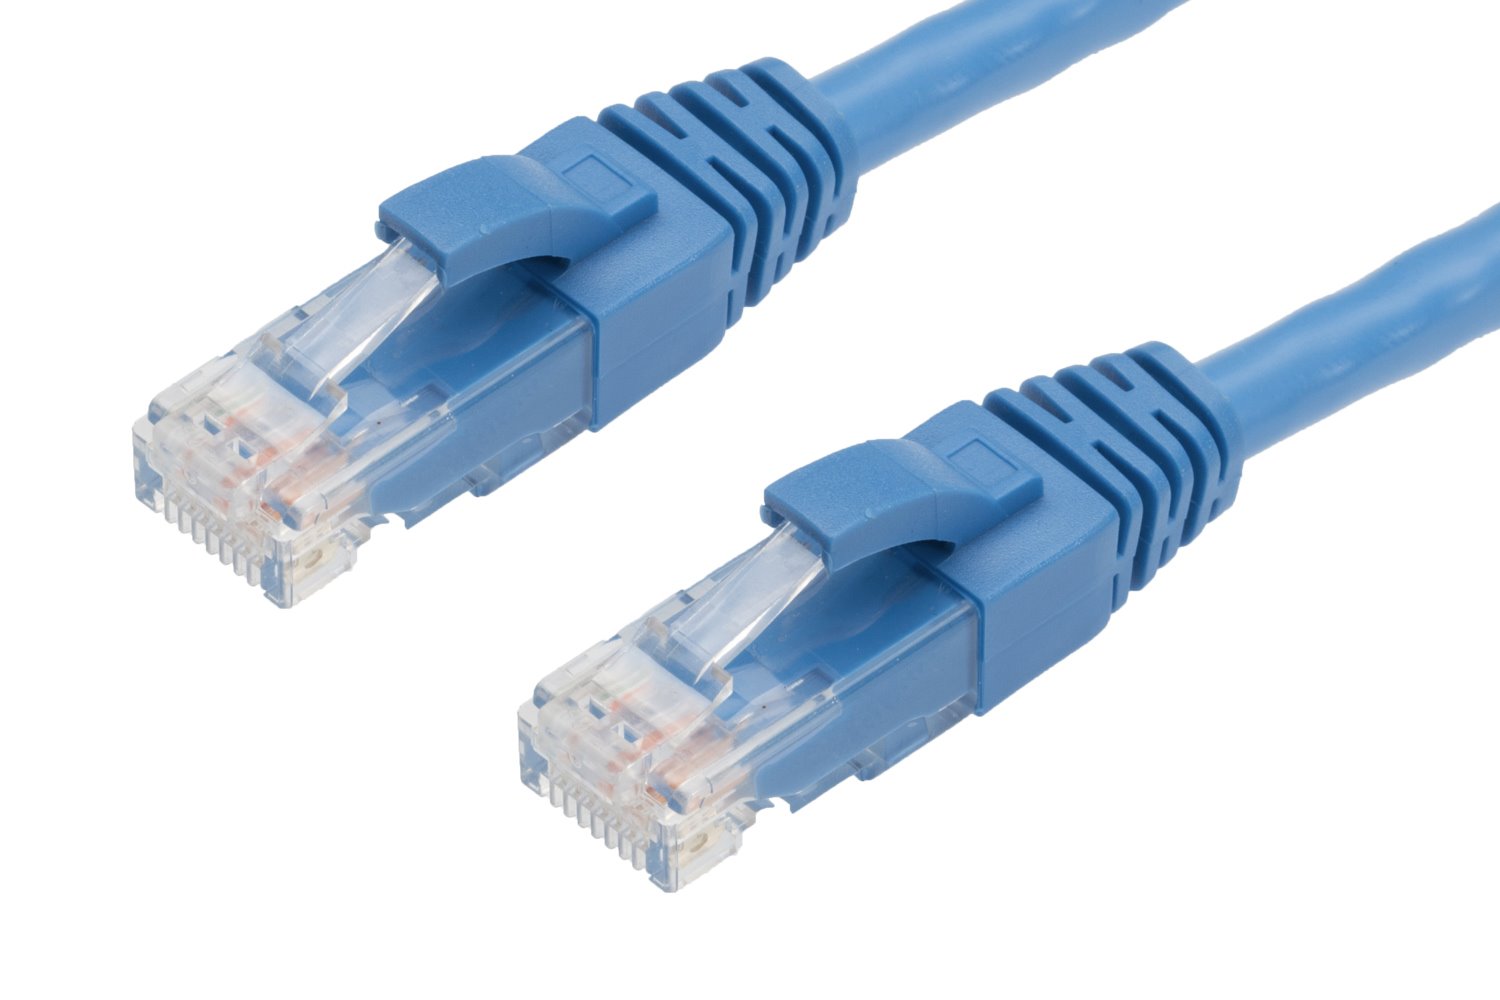 4Cabling 2M RJ45 Cat6 Ethernet Cable. Blue